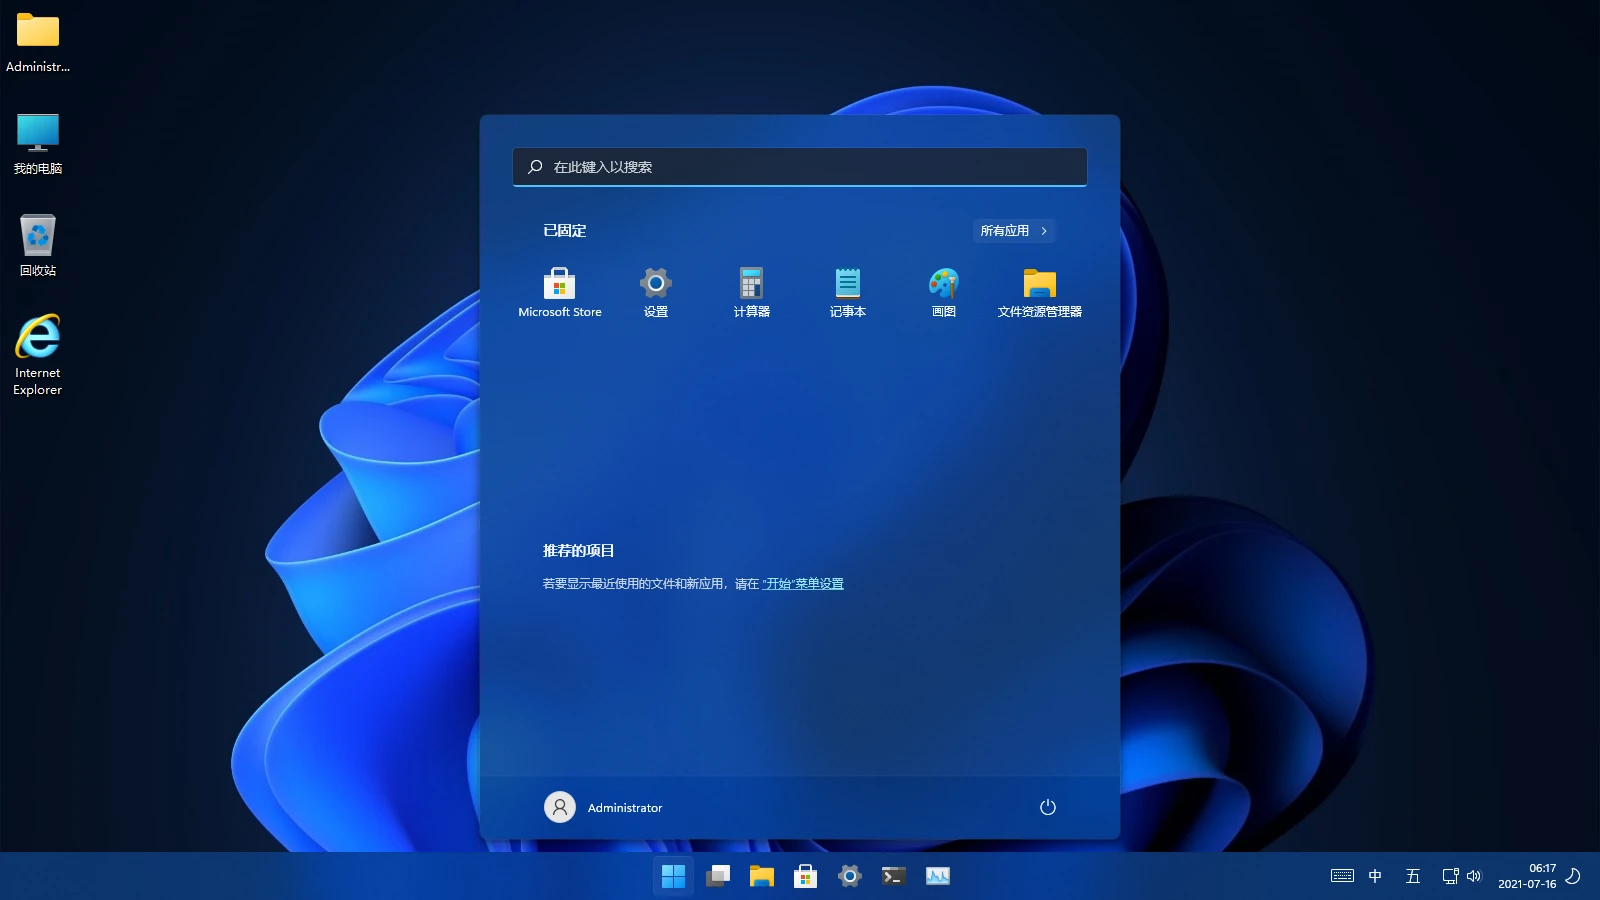 【雨晨】 Windows11(22000.71) 适度精简版 四合一